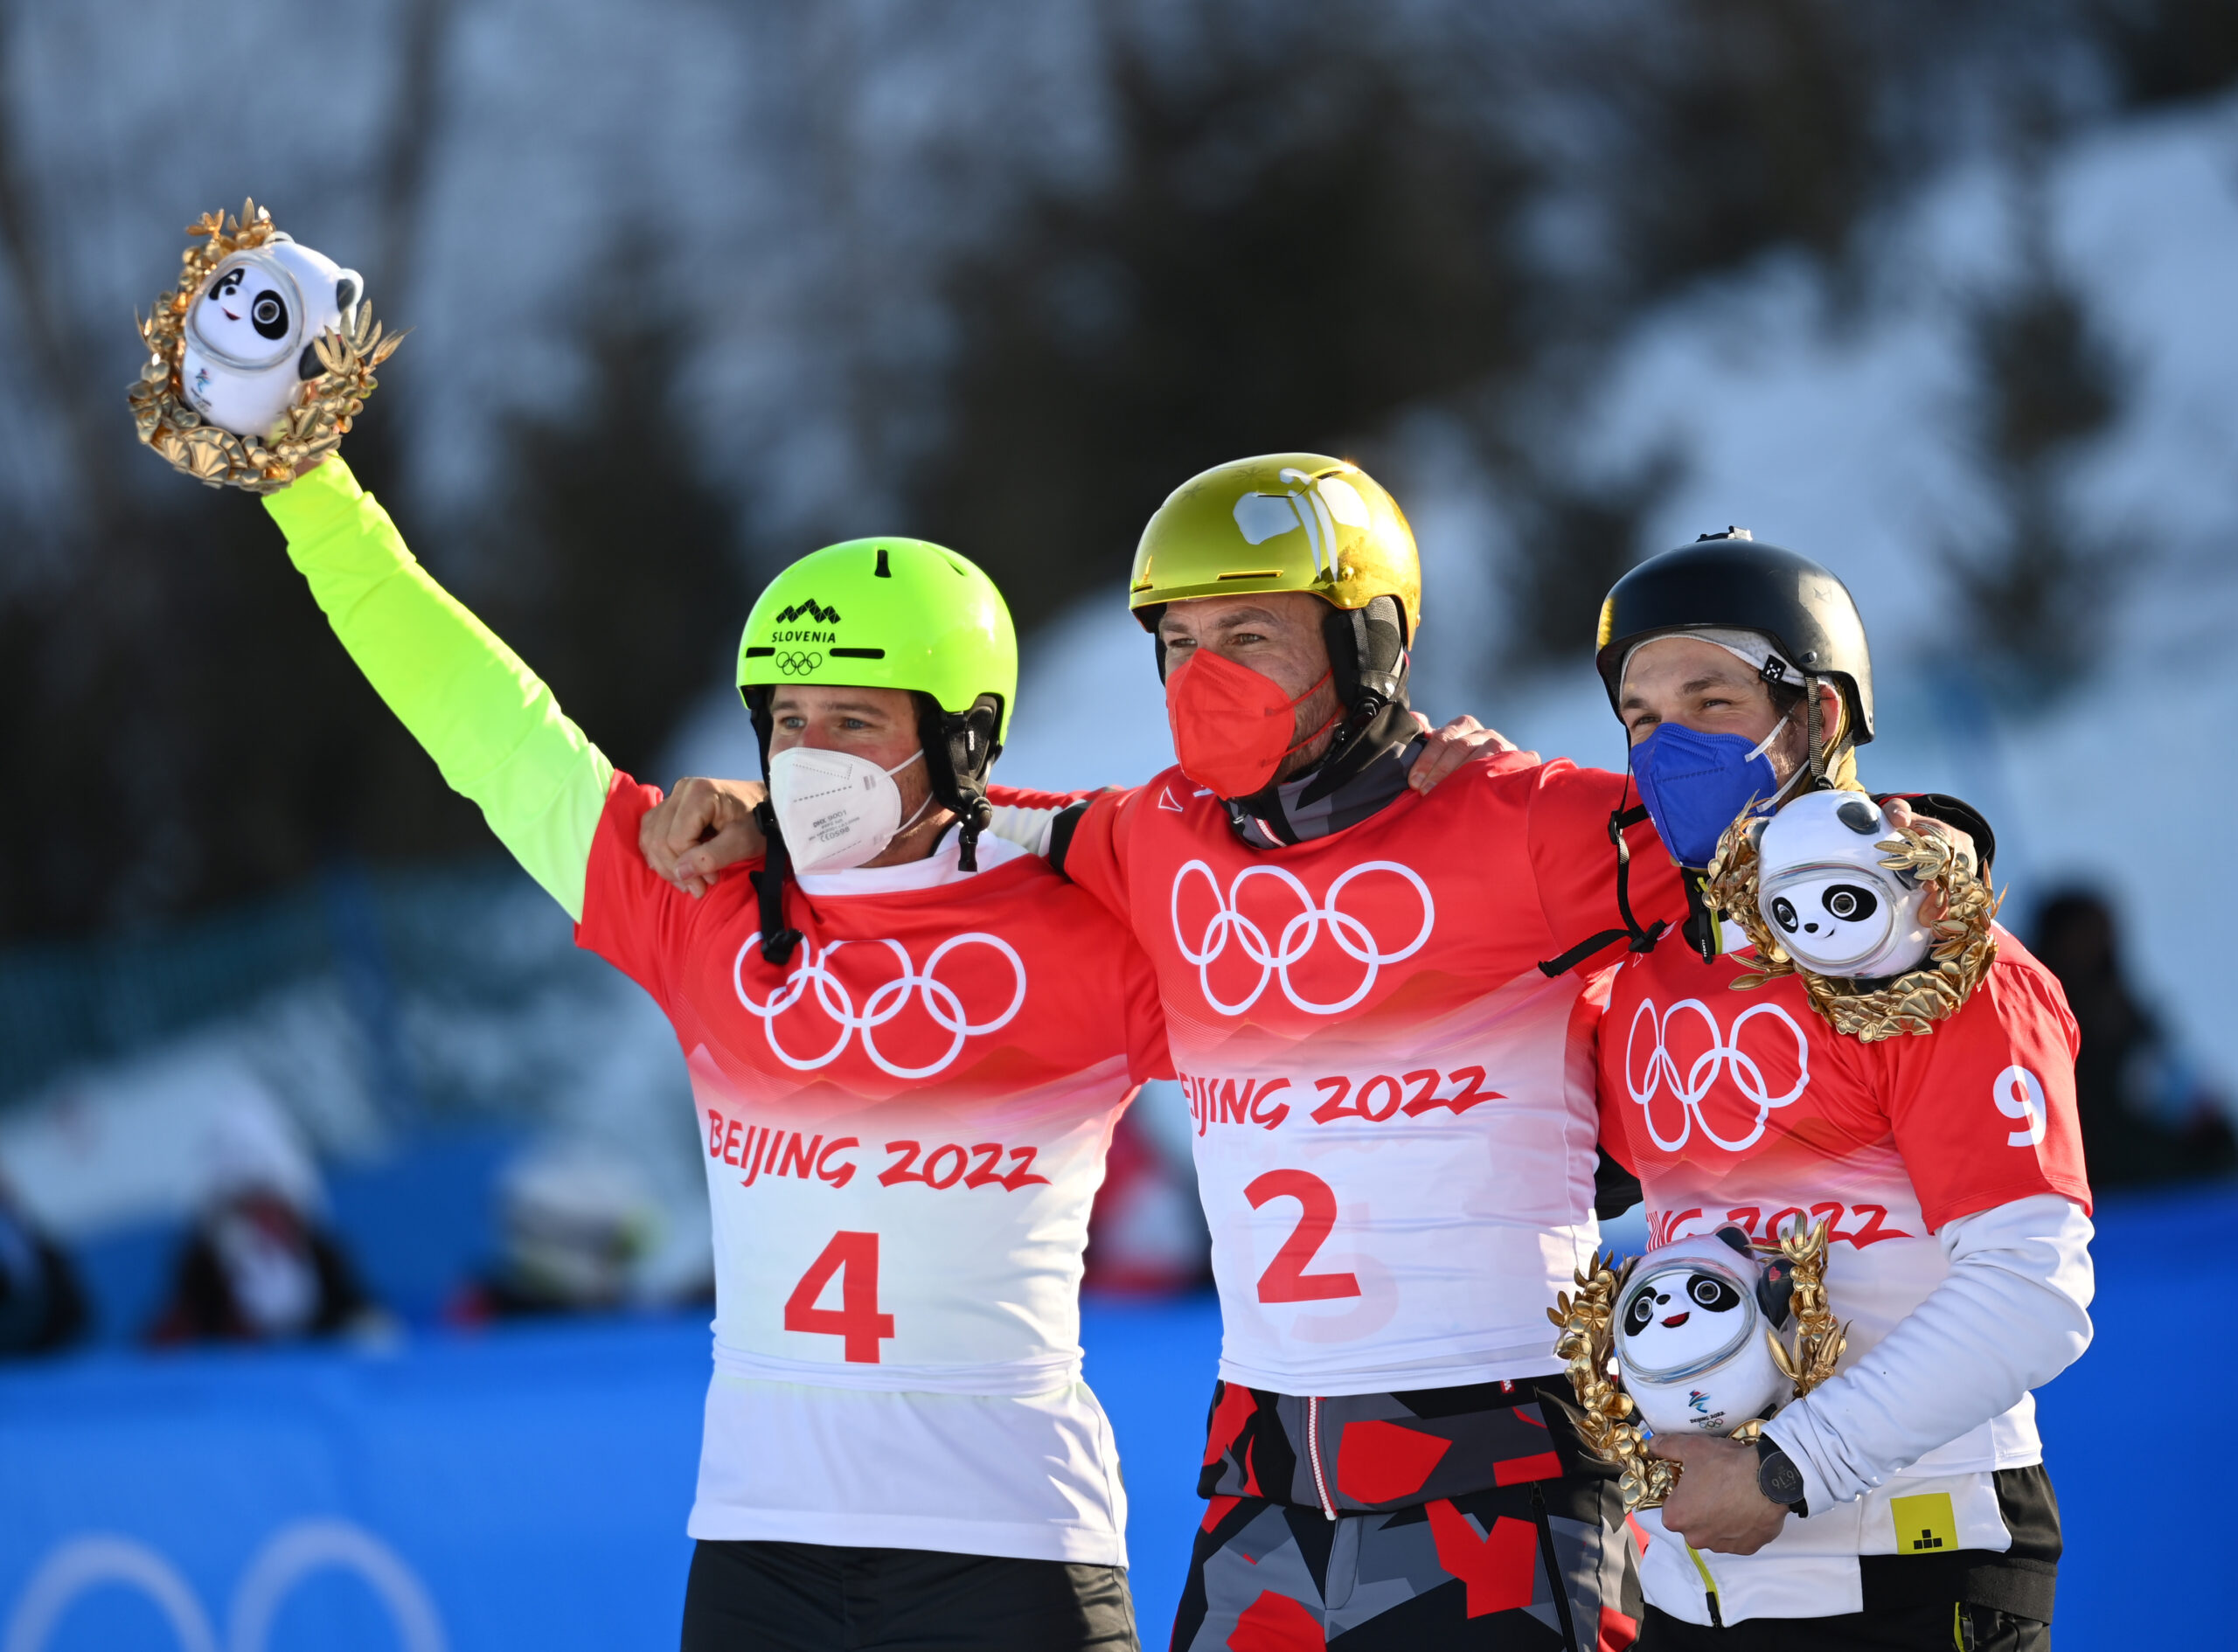 Die Olympiasieger im Snowboard feiern zusammen